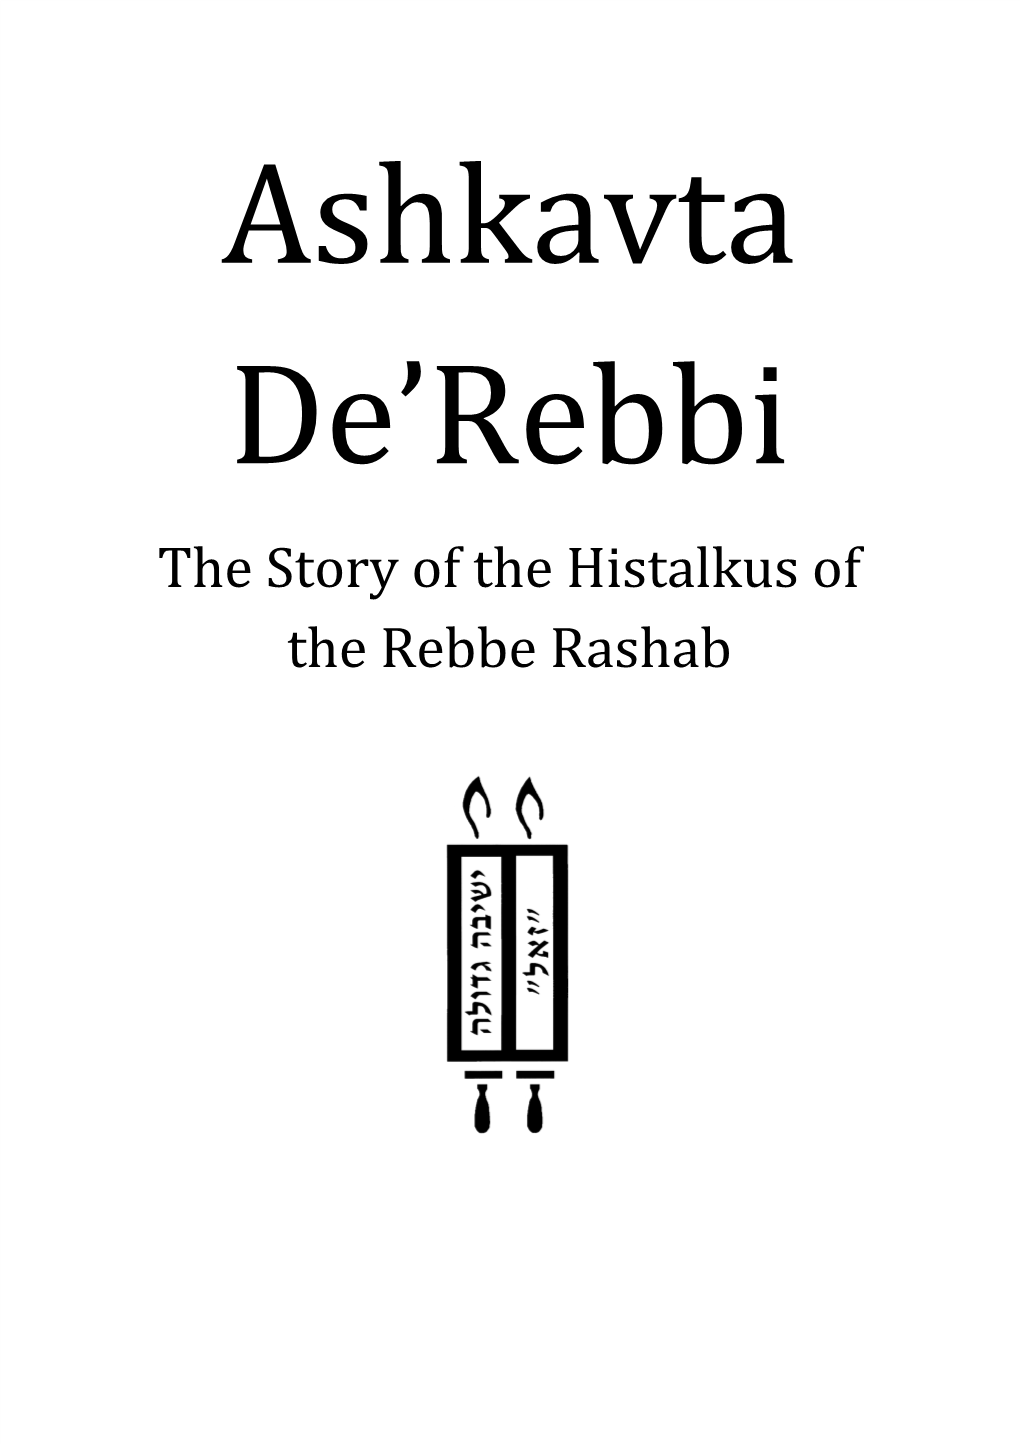 Ashkavta De'rebbi